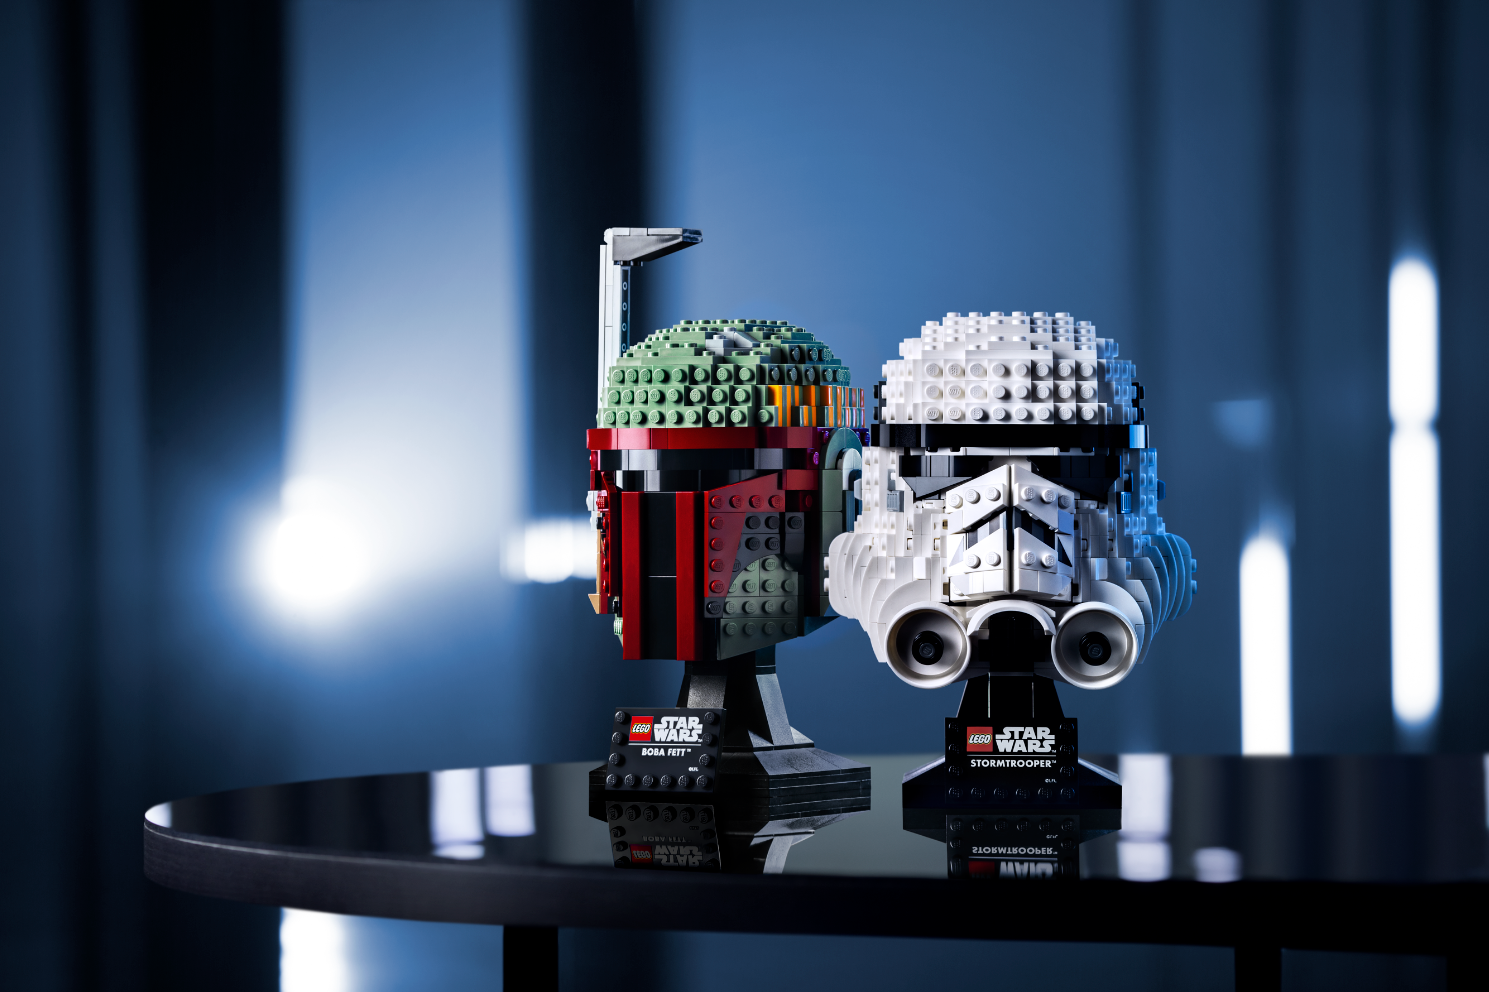 star wars lego stormtrooper sets